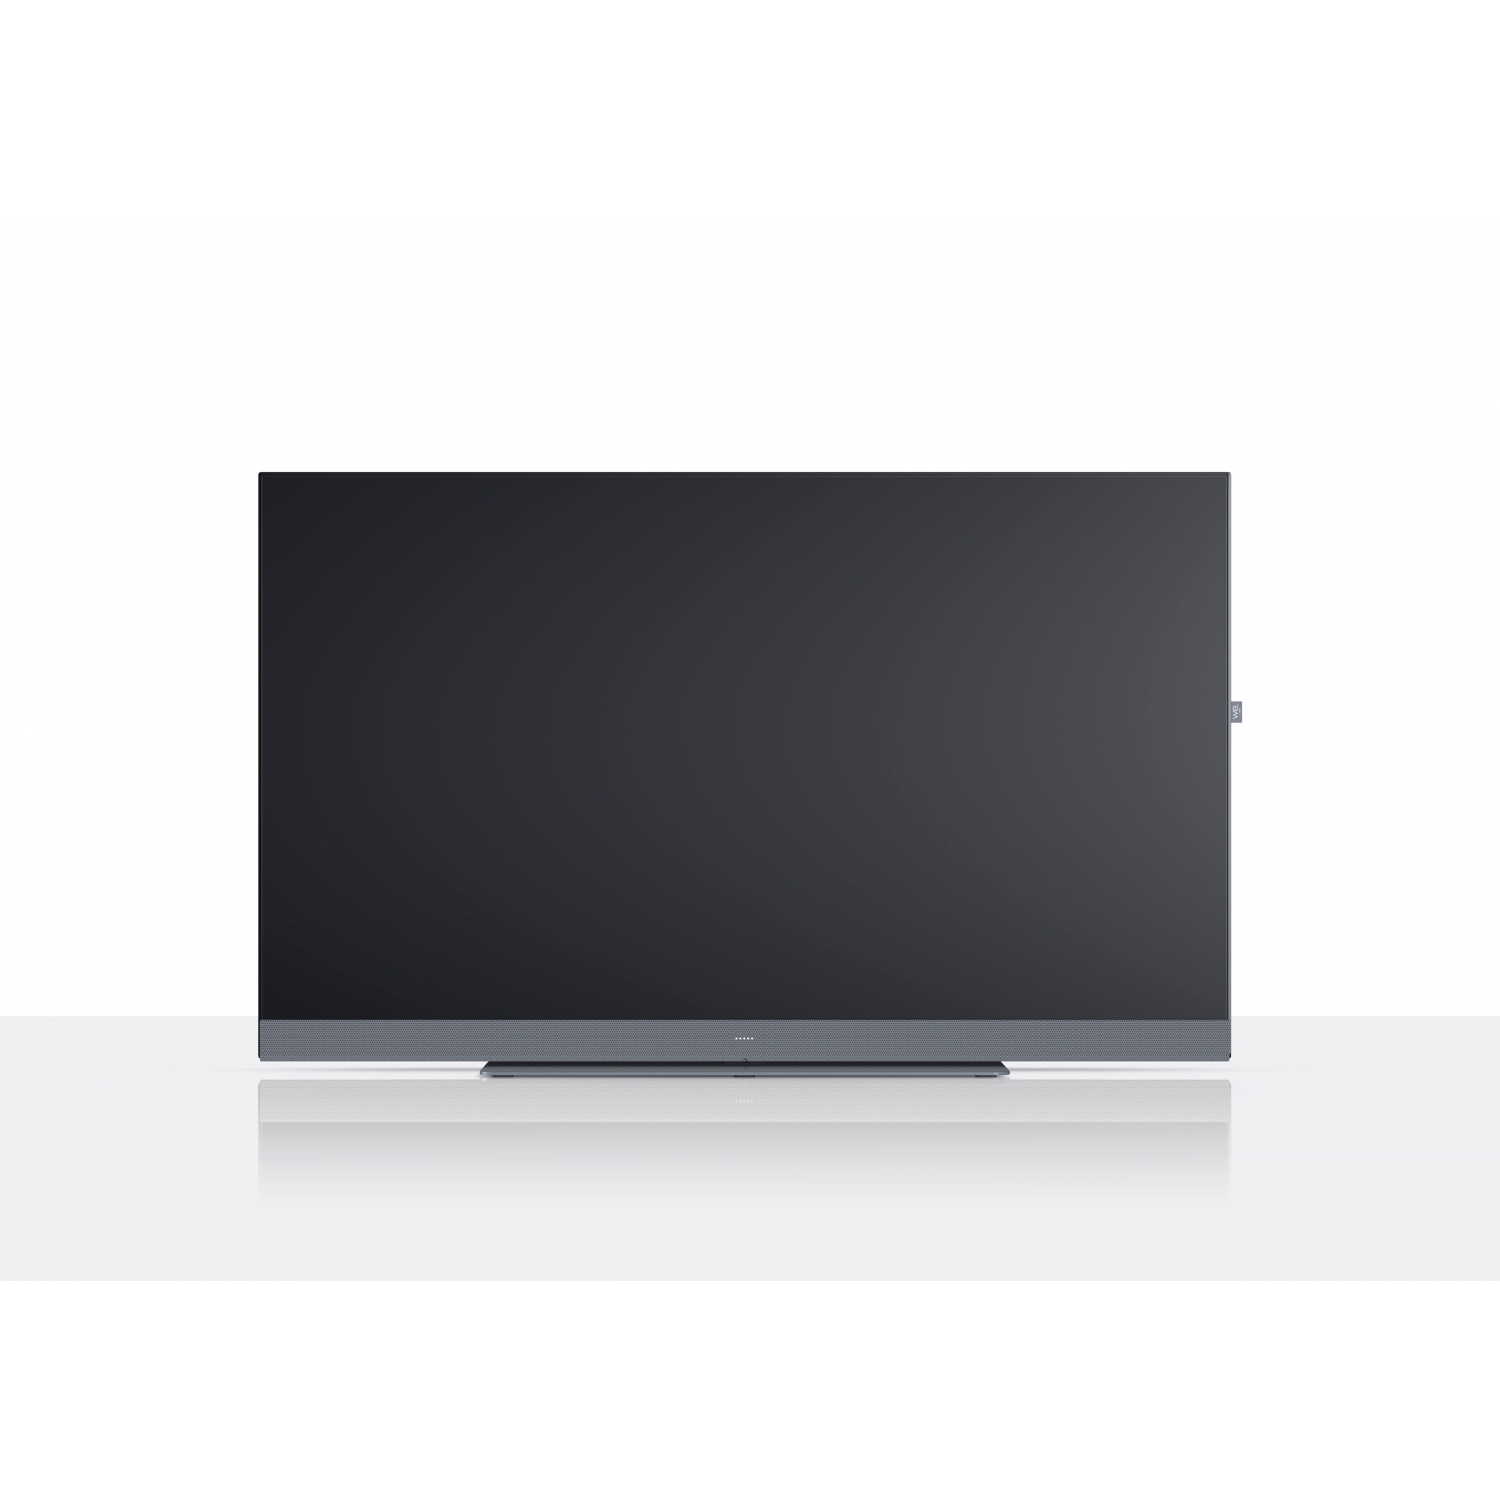 Loewe WESEE50SG 50" LCD Smart TV - Storm Grey - 0